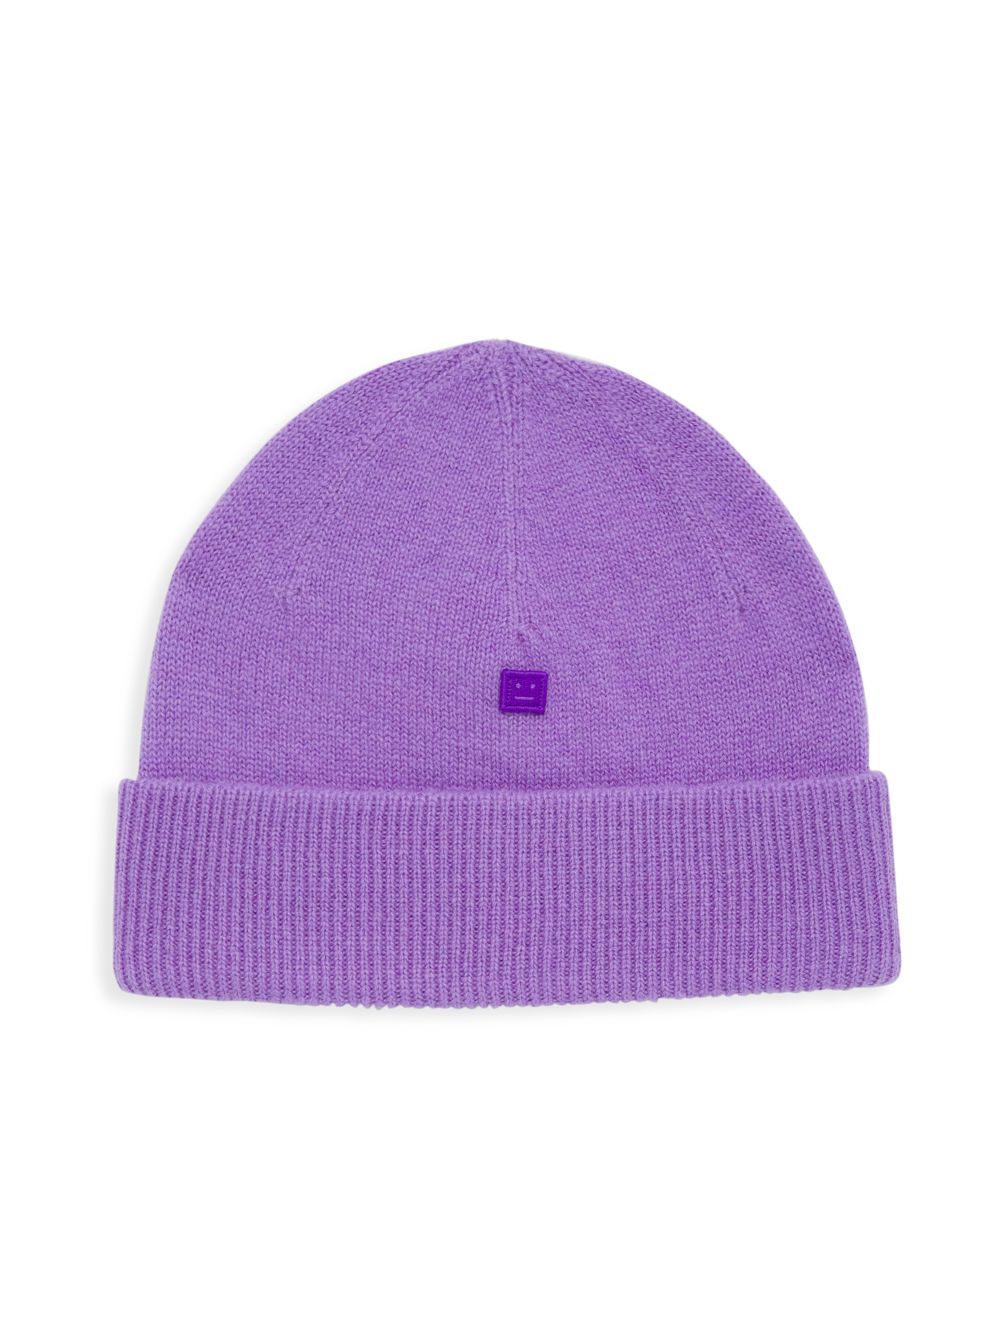 Шерстяная шапка Kana Face Acne Studios, фиолетовый